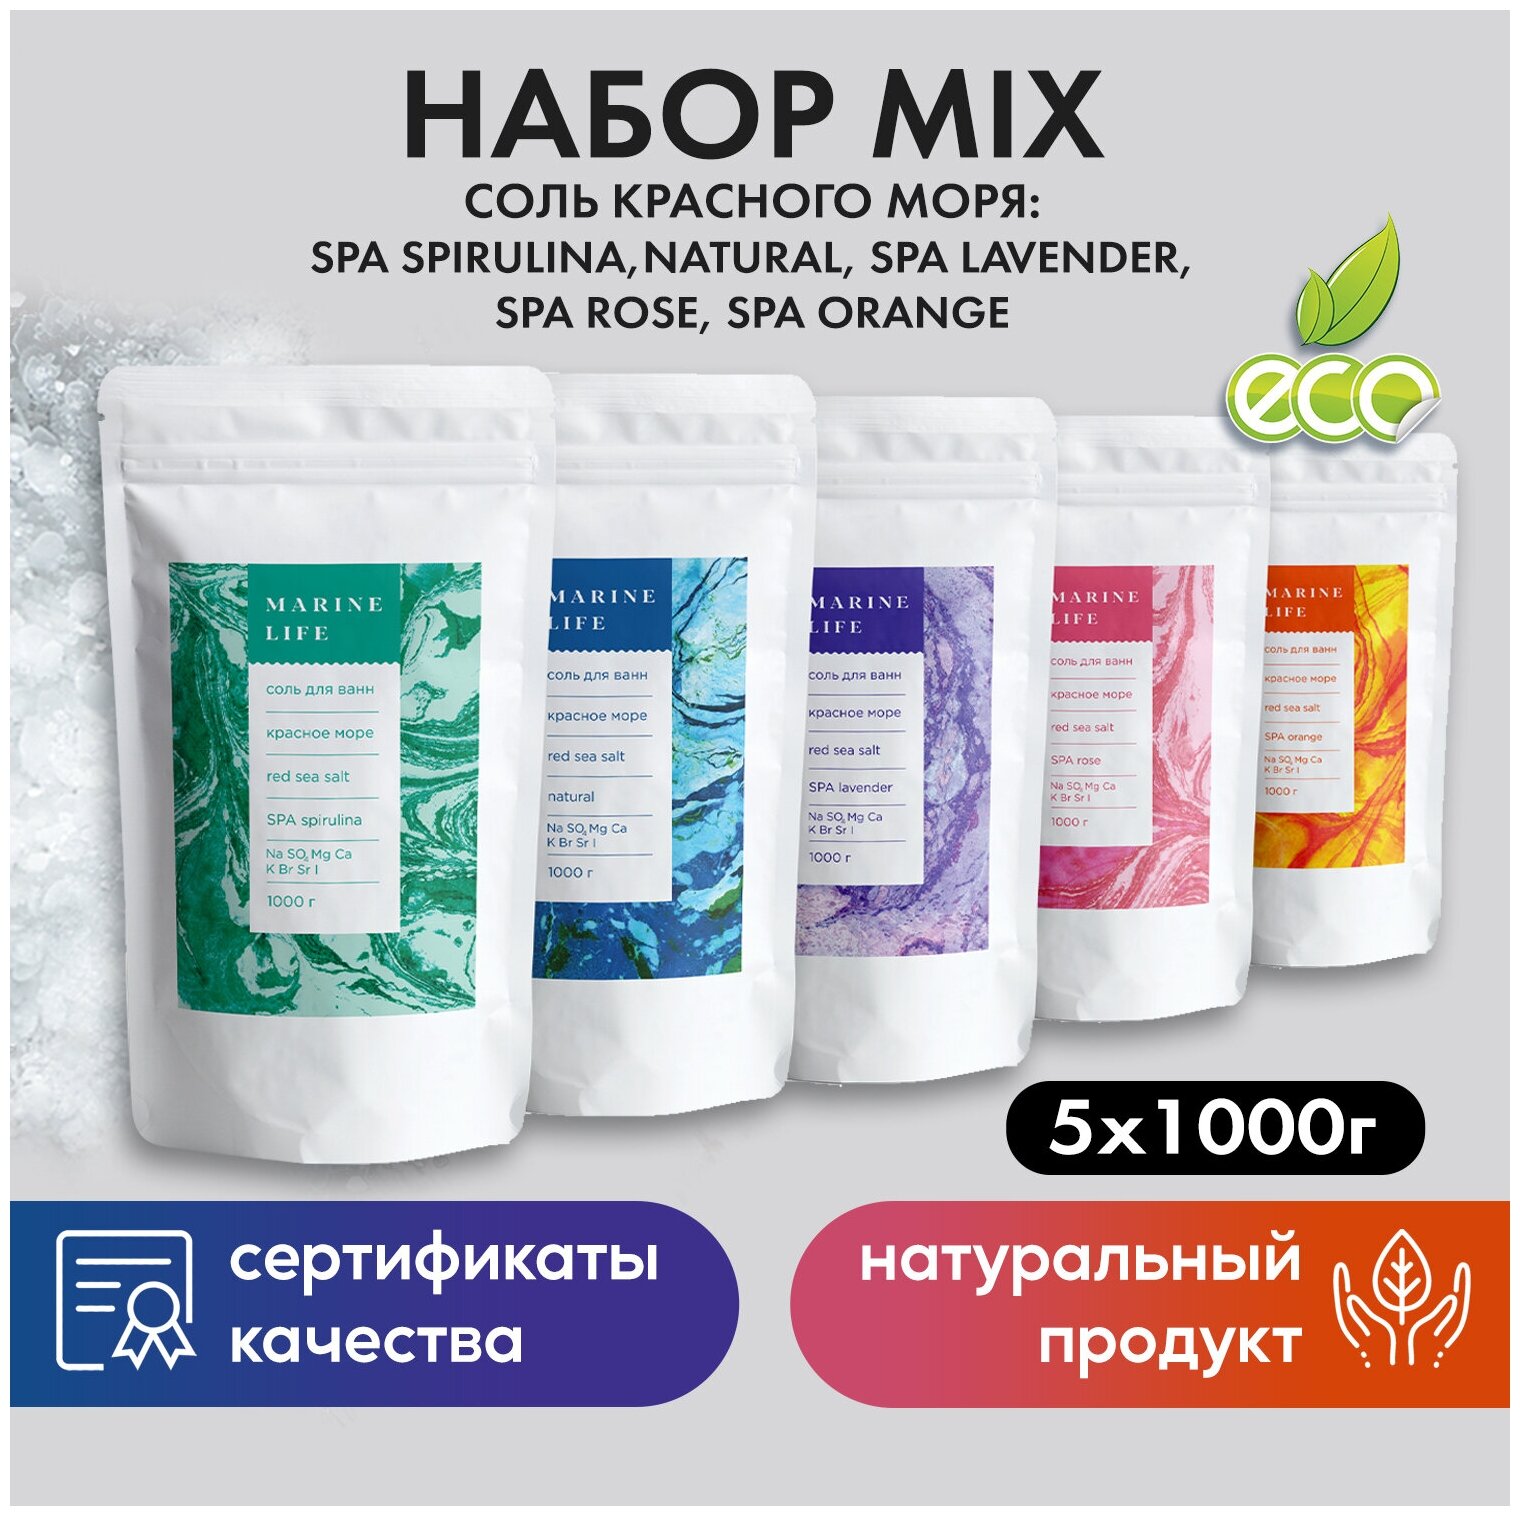 Набор солей для ванны Красного моря СПА-MIX Marine Life, очищение организма и укрепление иммунитета, 5 кг